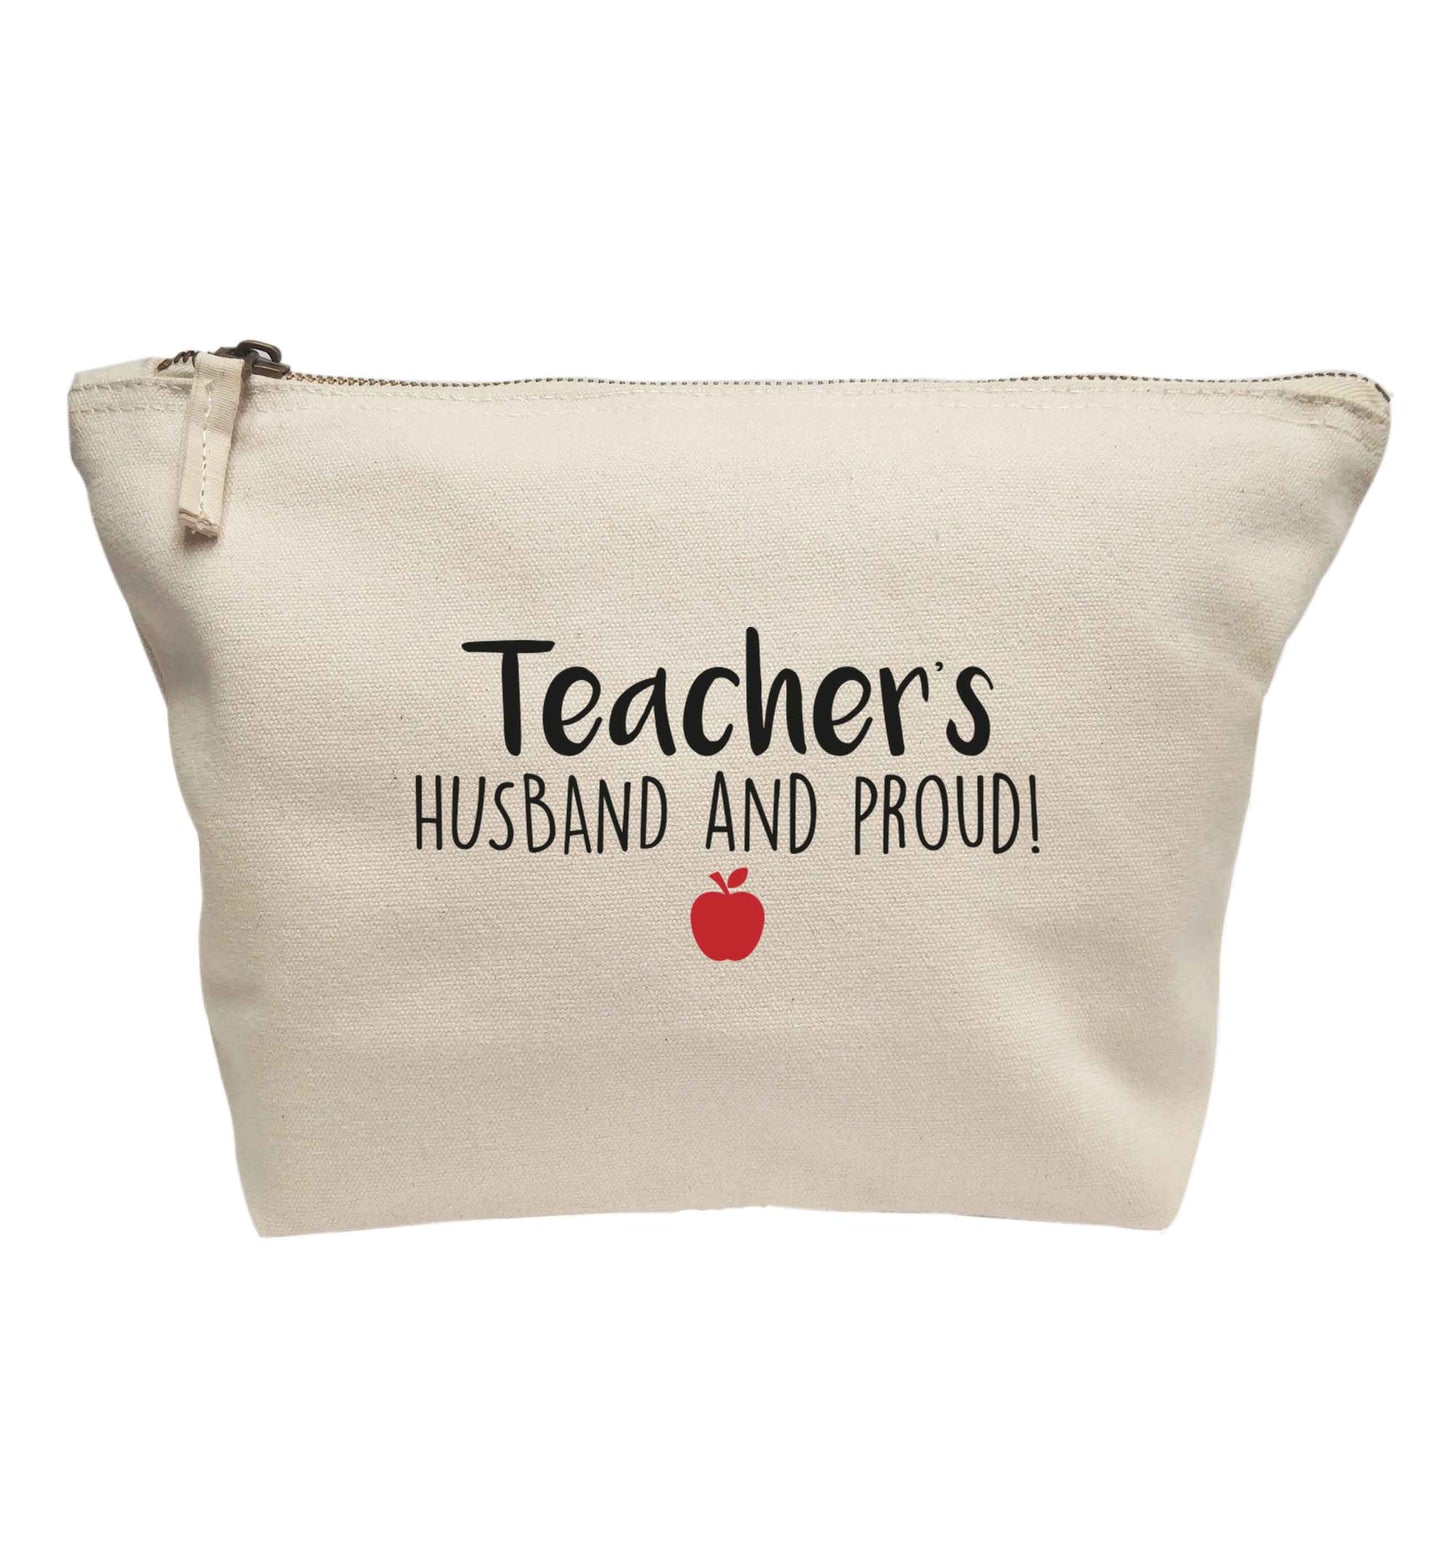 Teachers husband and proud | Makeup / wash bag